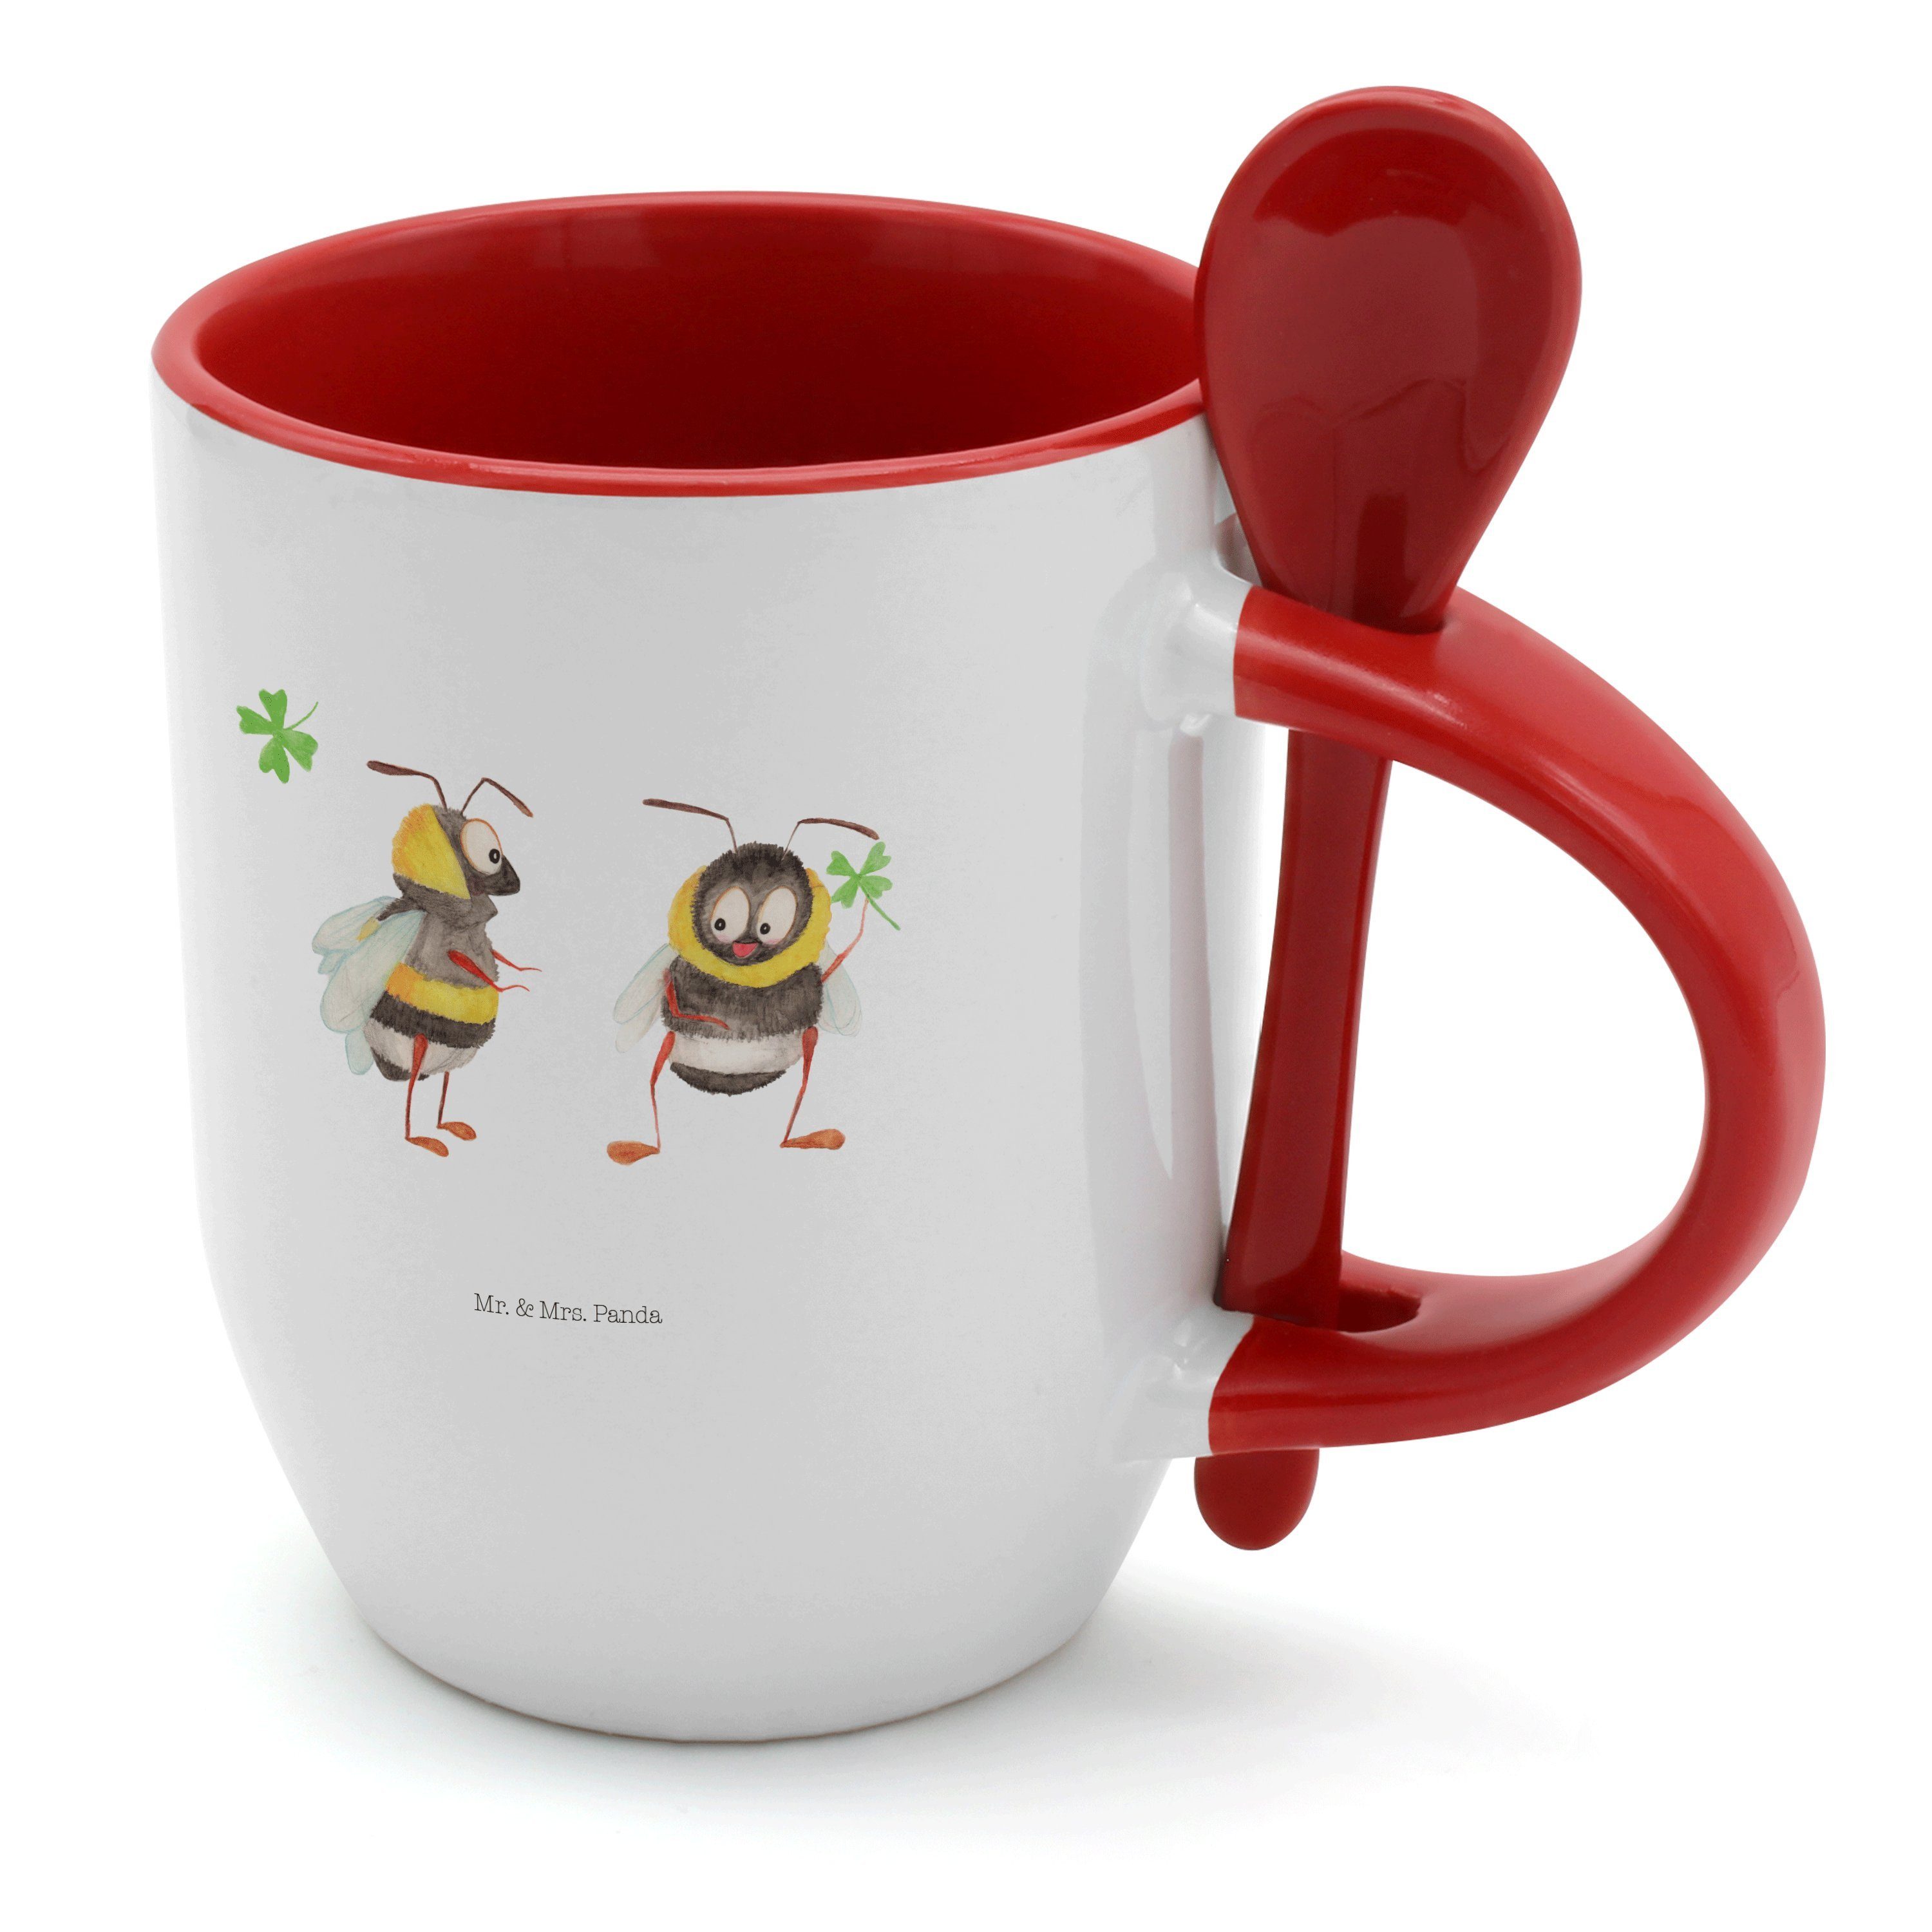 Mr. & Mrs. Panda Tasse Hummeln mit Kleeblatt - Weiß - Geschenk, Tassen, Gute Laune, Spruch s, Keramik